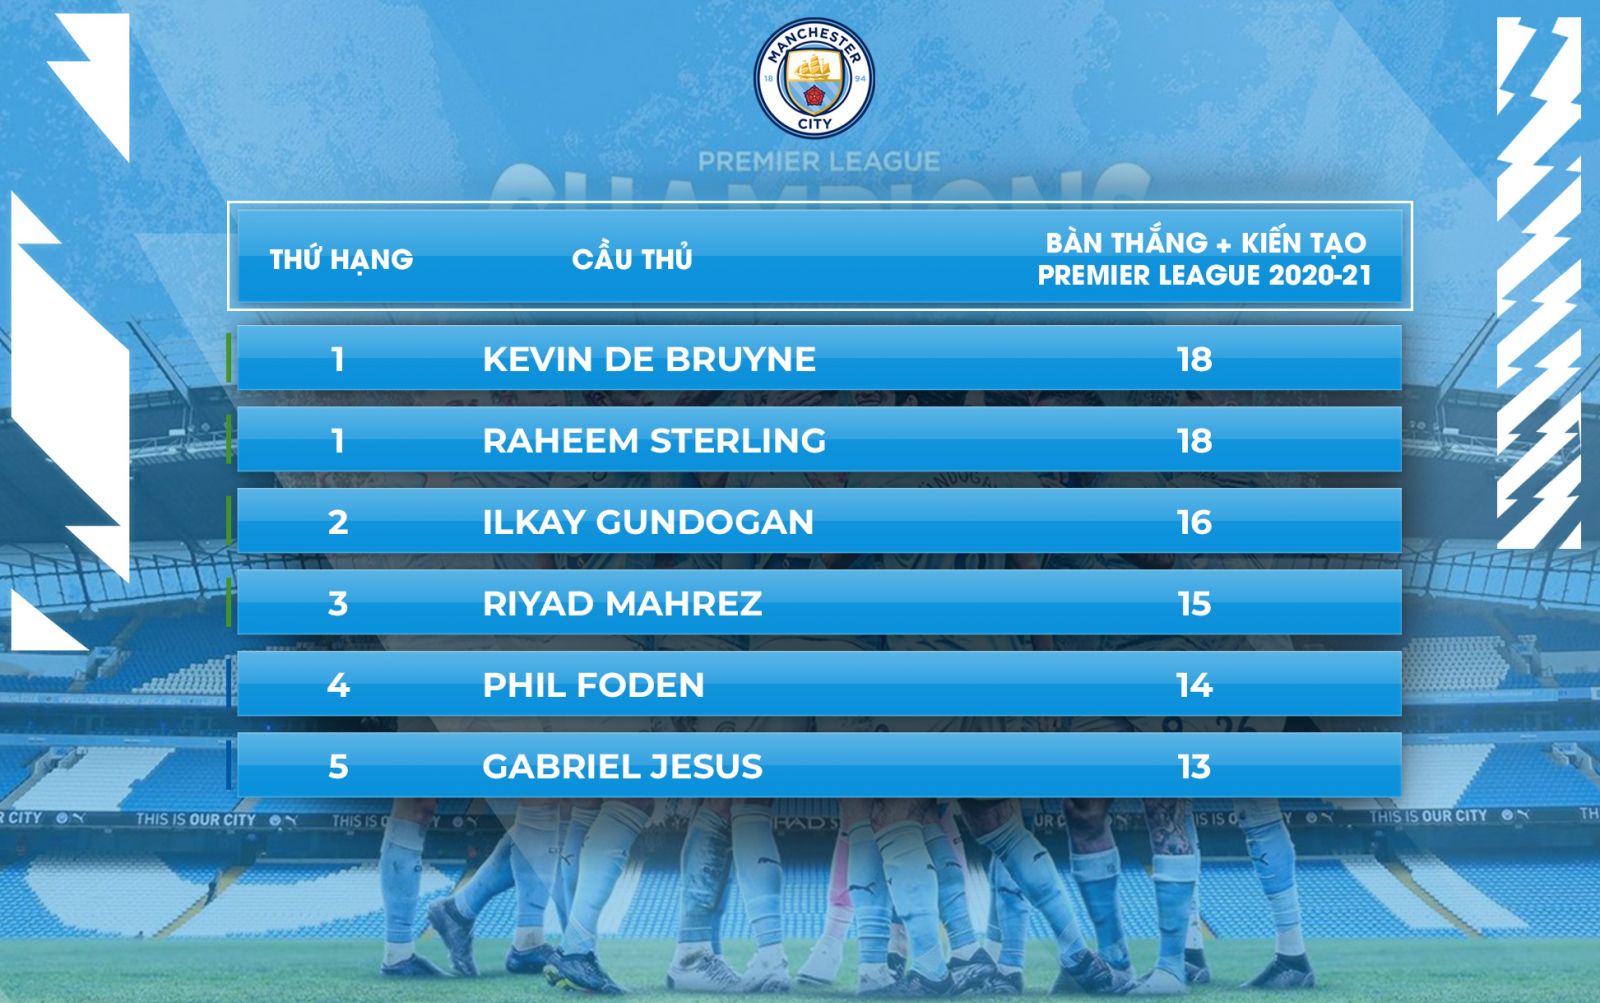 Kevin de Bruyne và Gundogan lần lượt xếp thứ 1 và 2 trong tổng số bàn thắng và kiến tạo đóng góp cho Manchester City